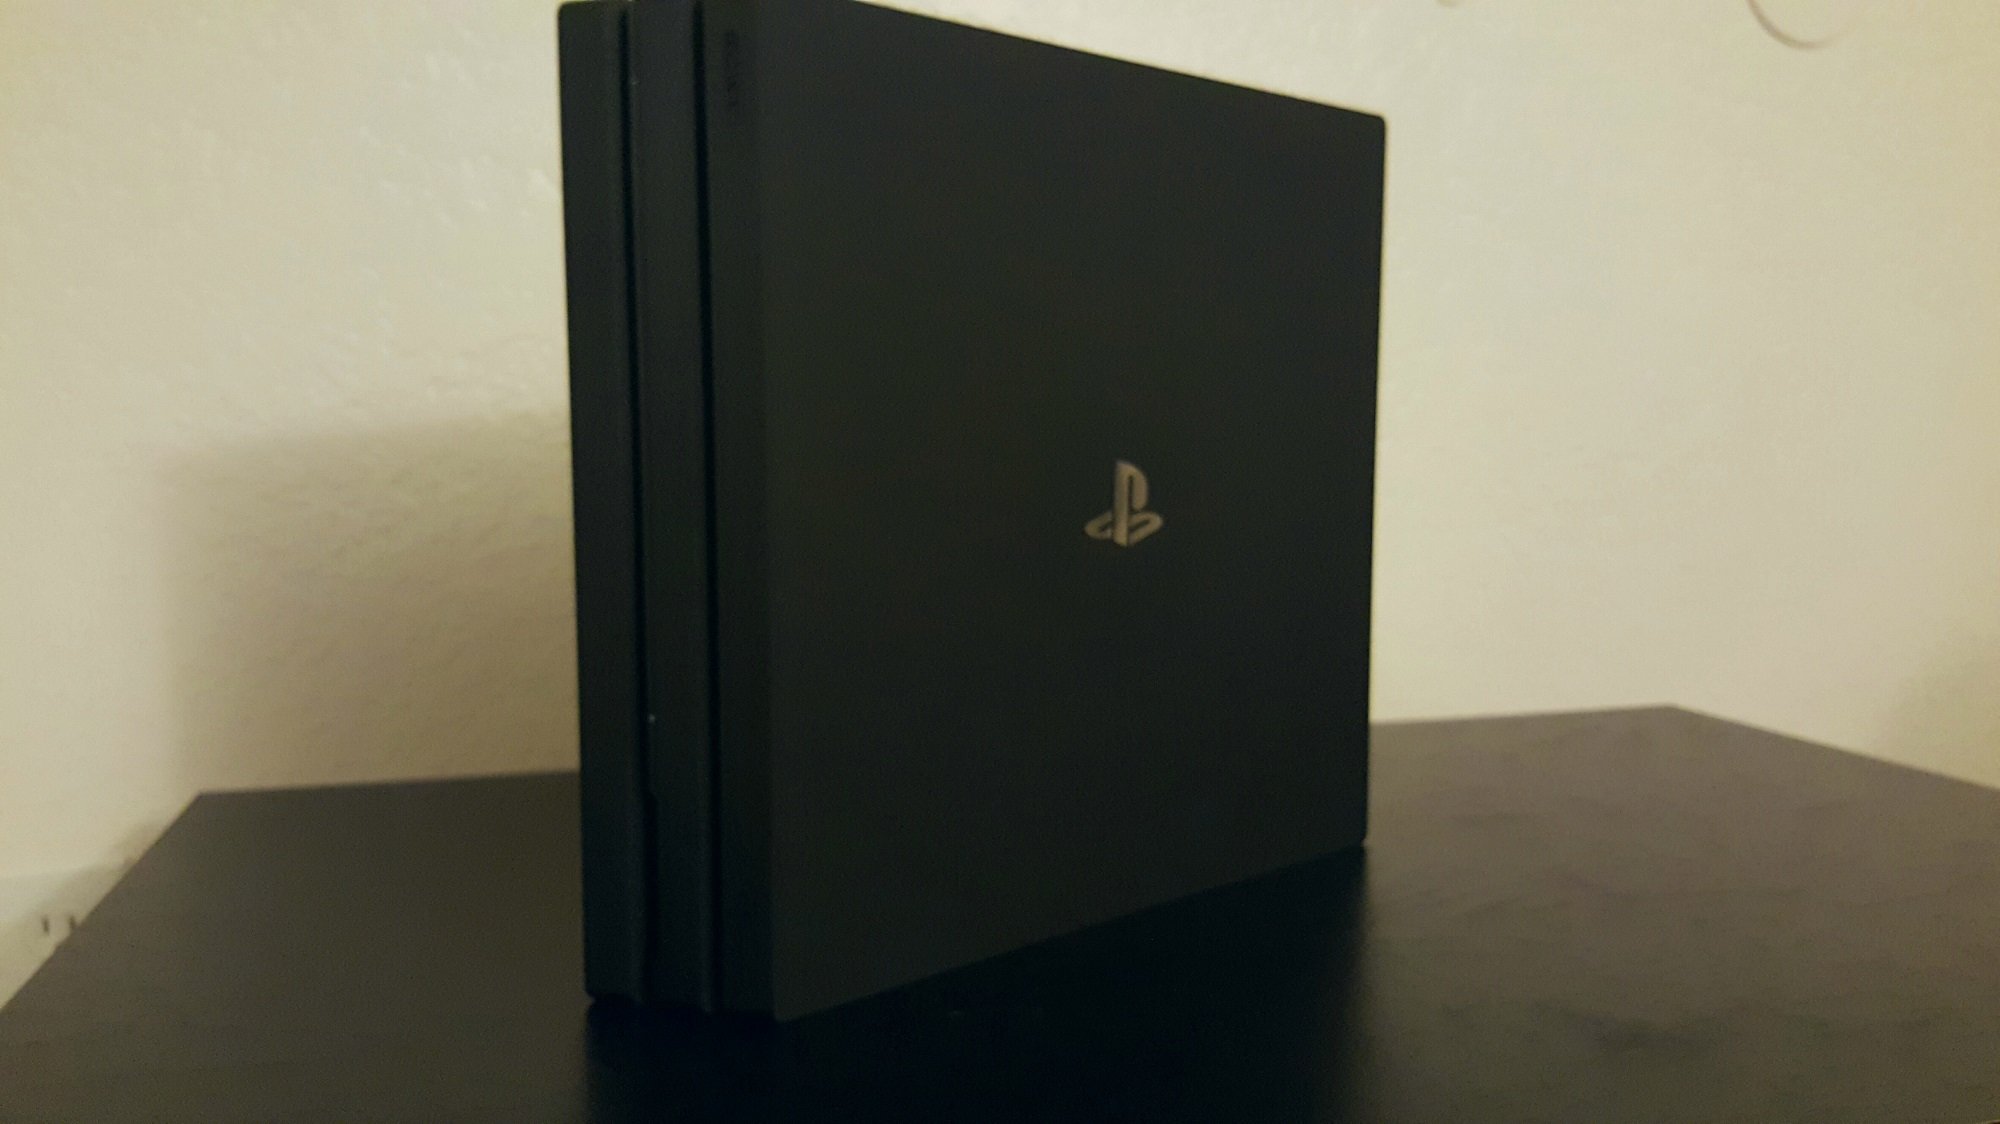 Анбоксинг PlayStation 4 Pro: новая консоль Sony и контроллер DualShock 4